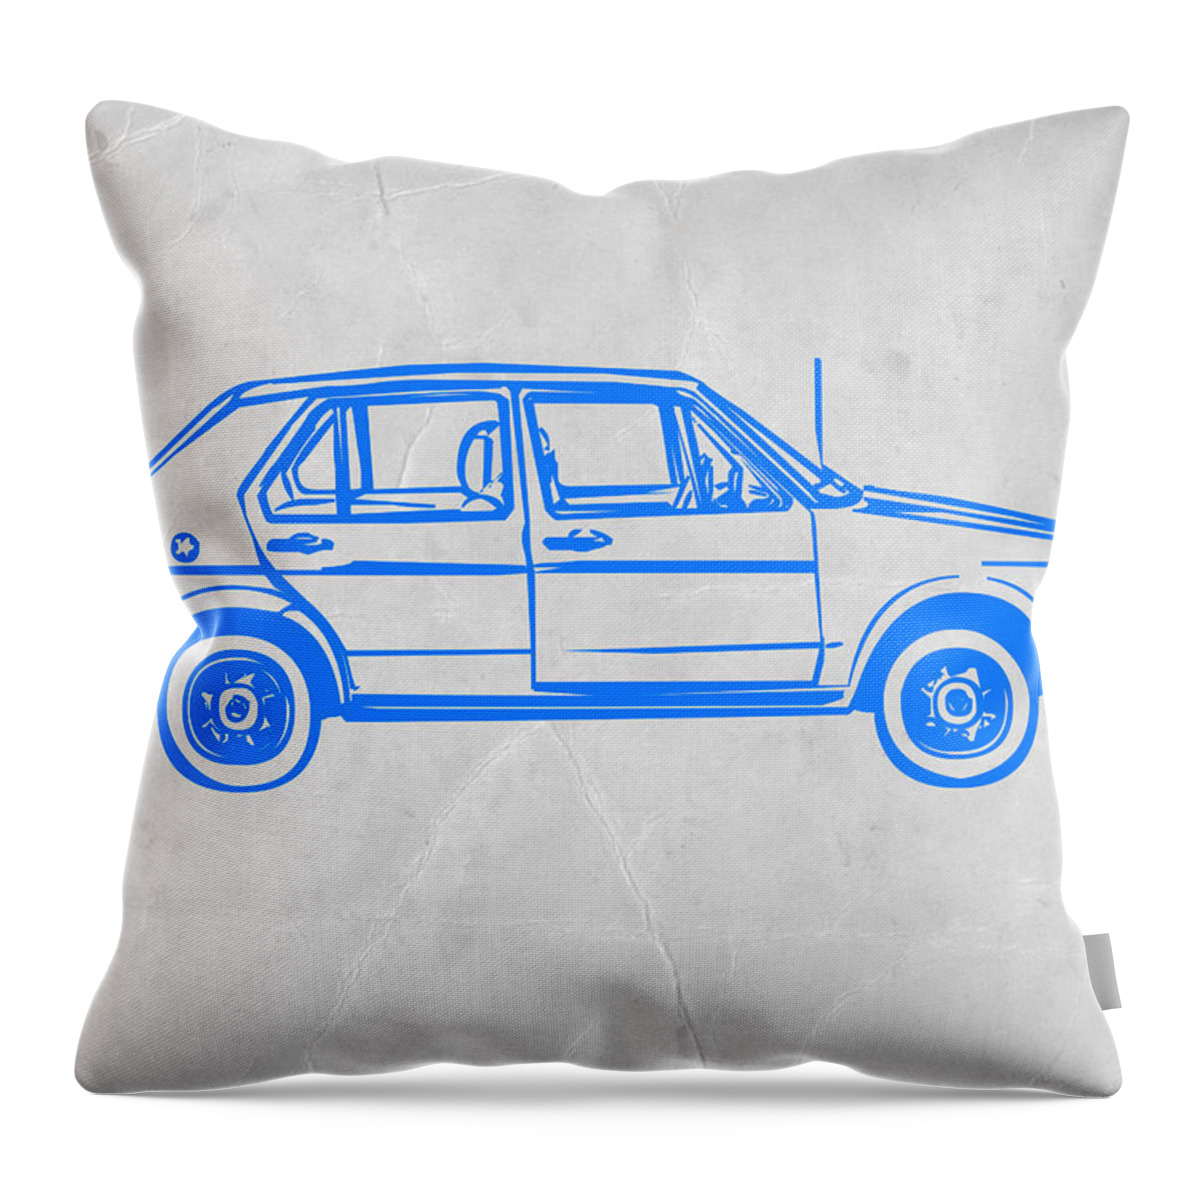 Vw Golf Throw Pillow featuring the digital art VW Golf by Naxart Studio